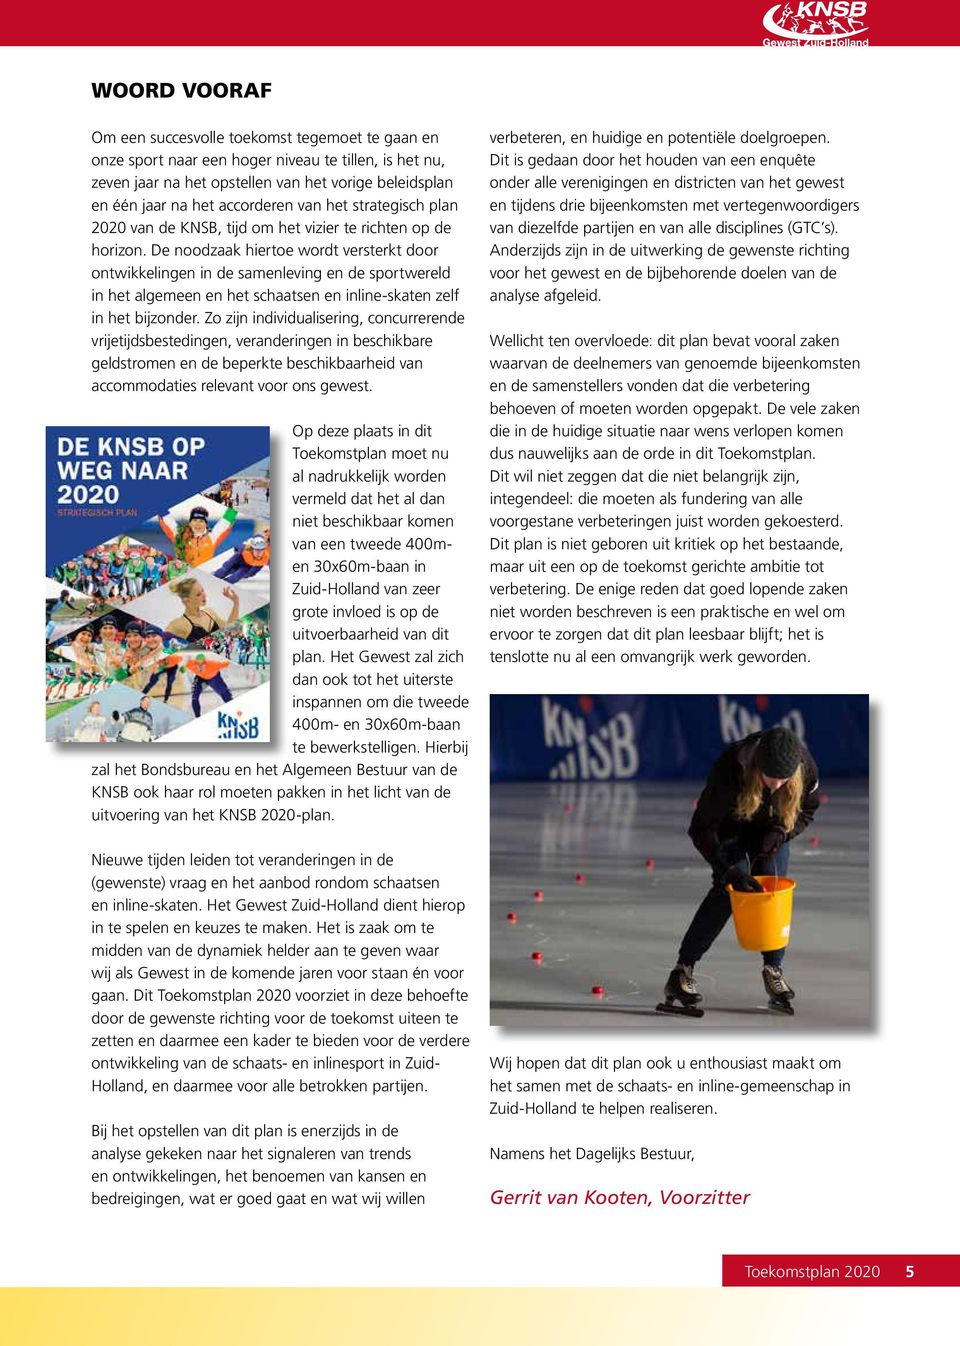 De noodzaak hiertoe wordt versterkt door ontwikkelingen in de samenleving en de sportwereld in het algemeen en het schaatsen en inline-skaten zelf in het bijzonder.